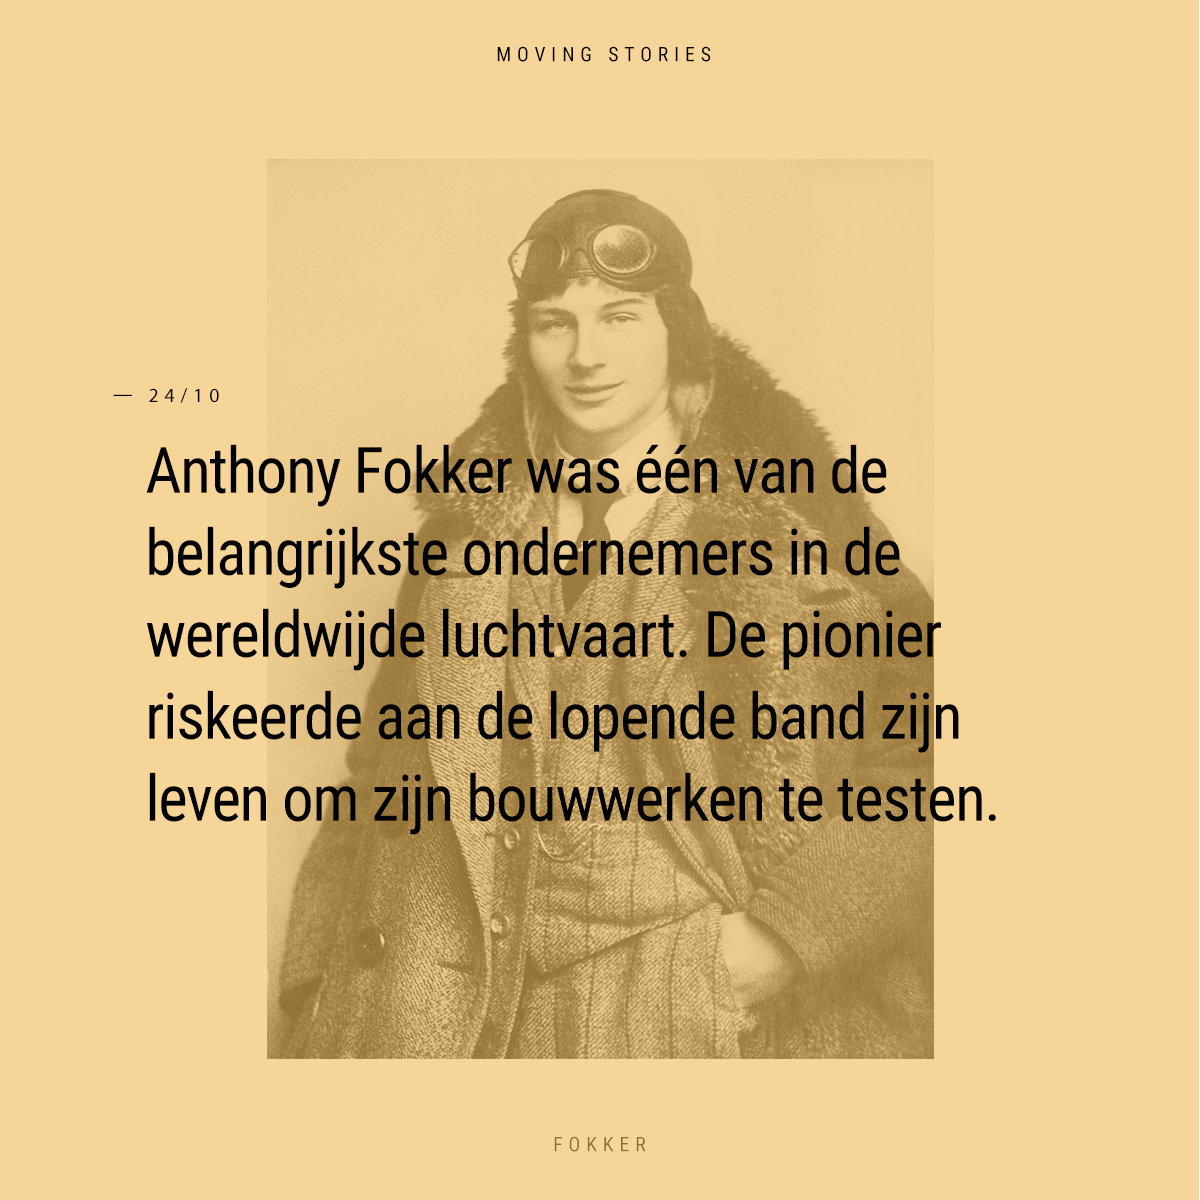 Moving Story - Anthony Fokker